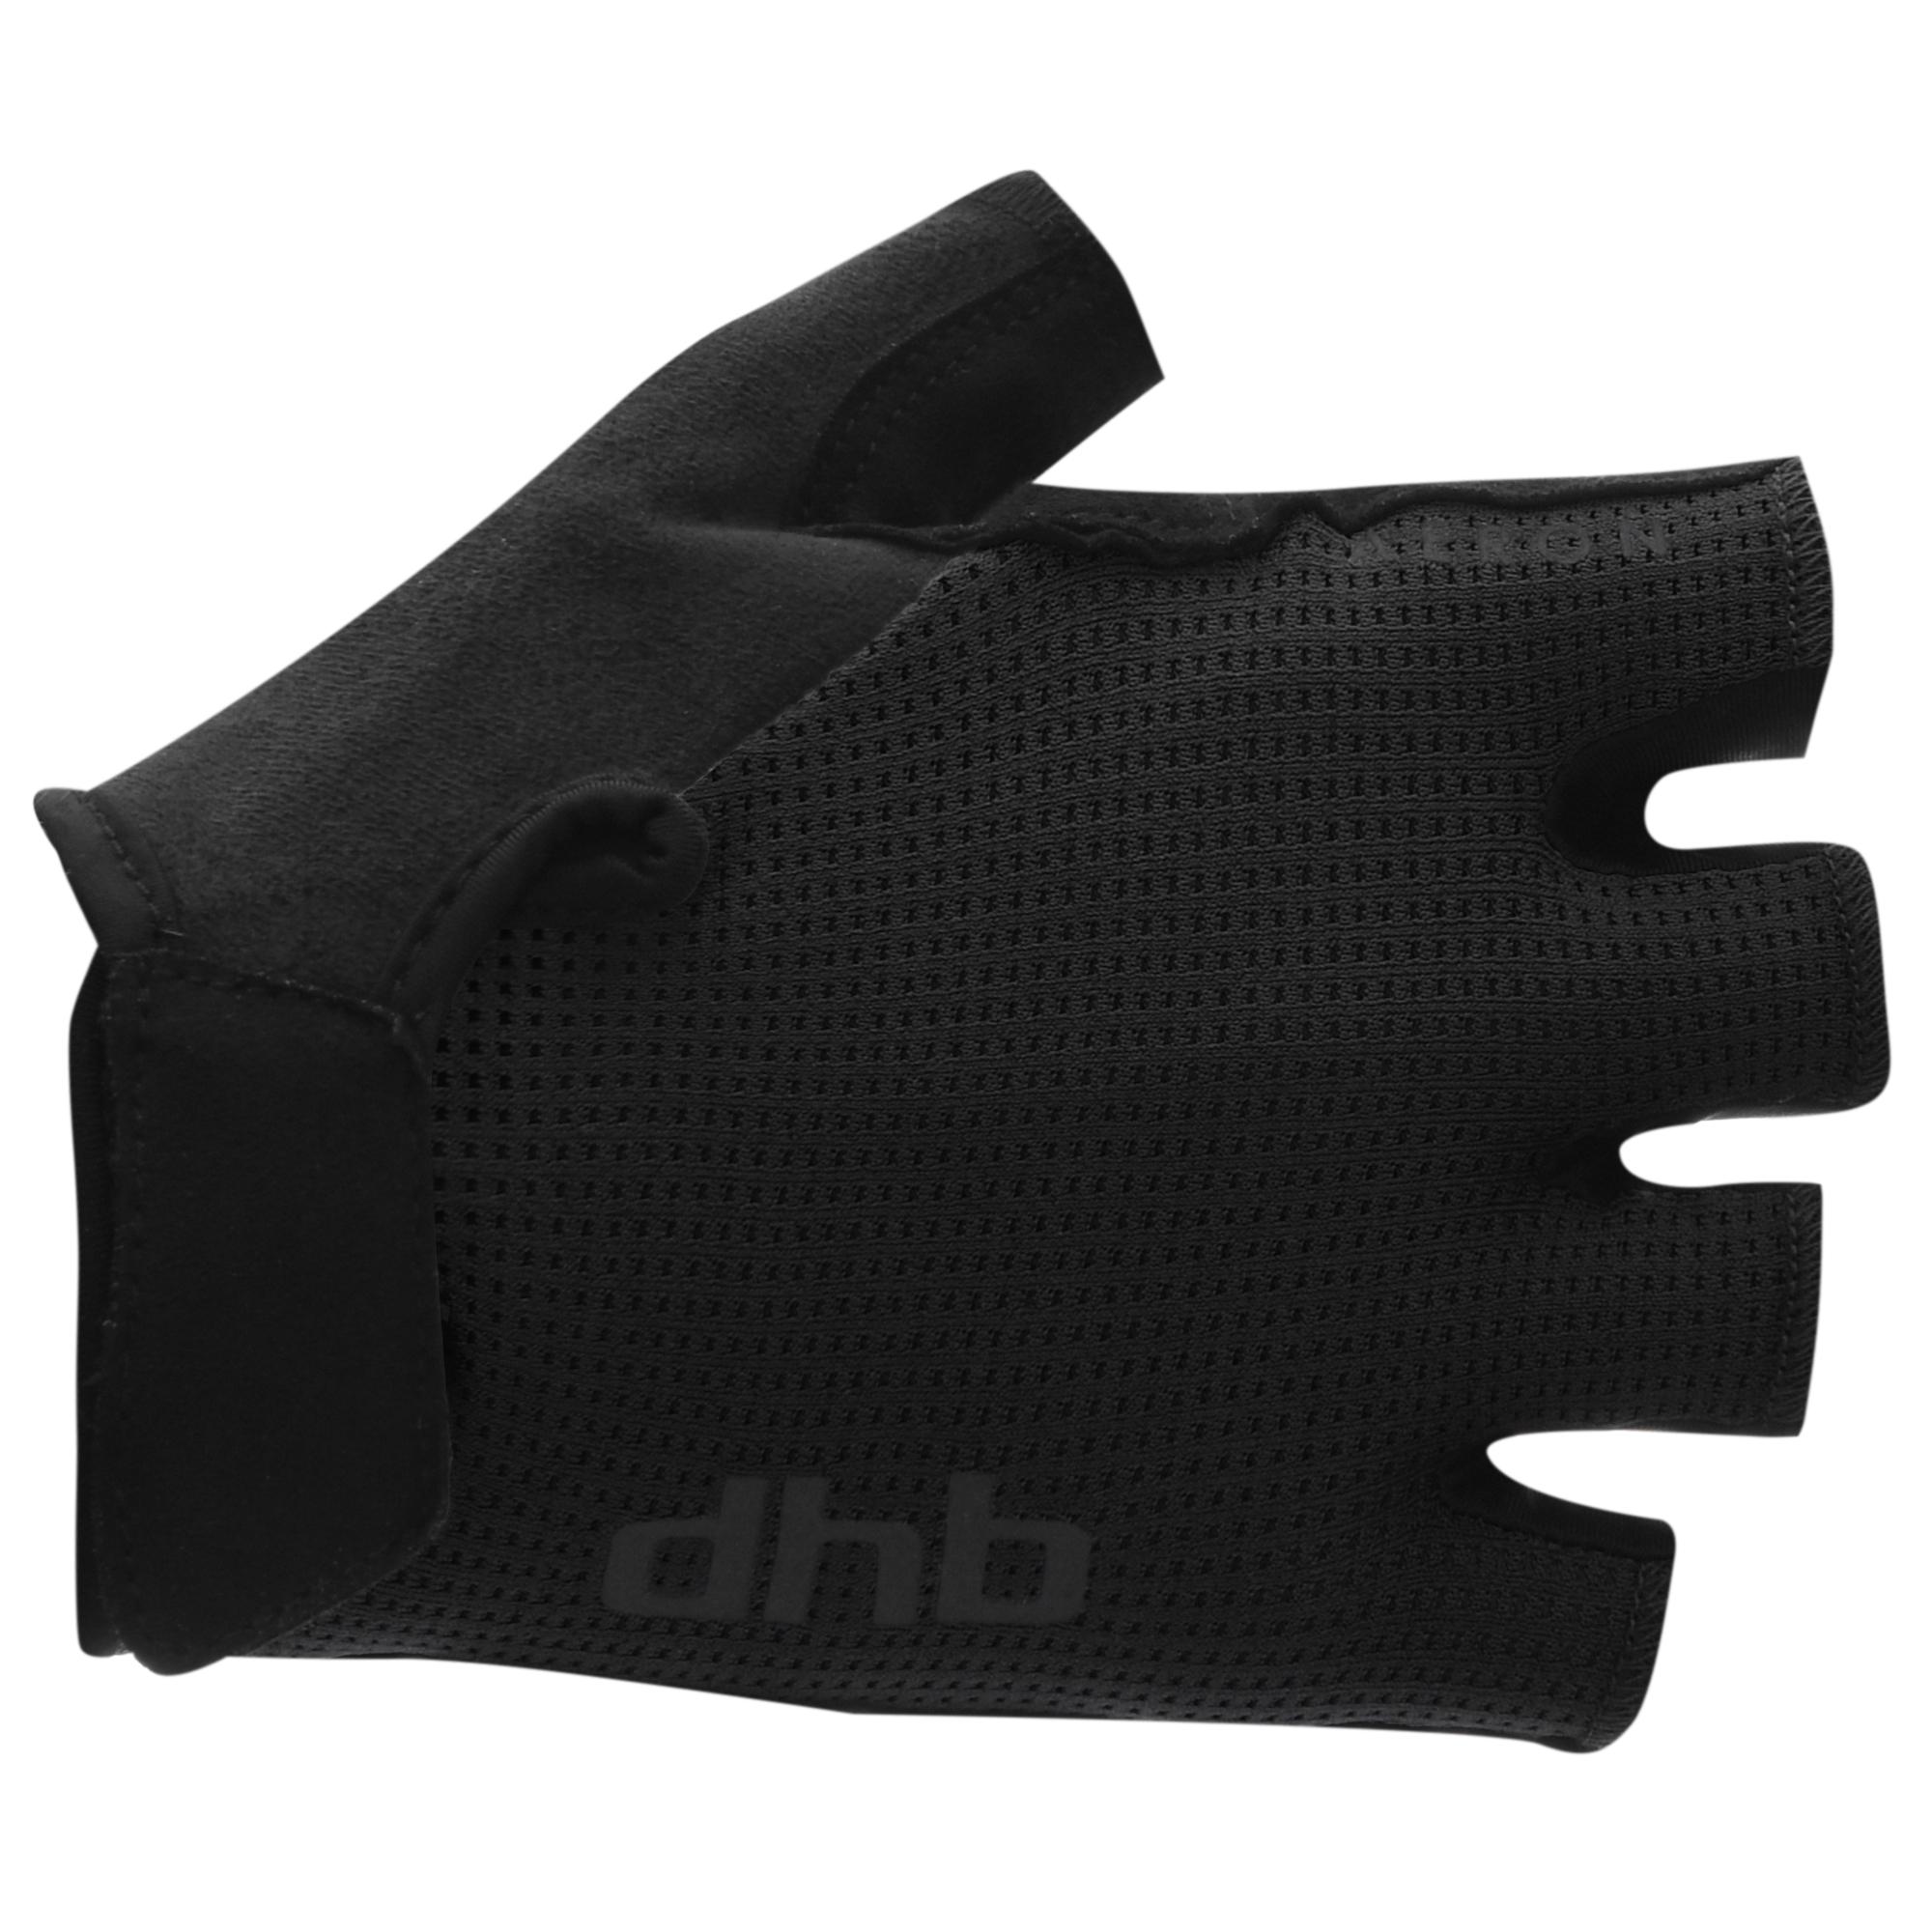 Dhb Aeron Short Finger Gel Gloves 2.0 - Black